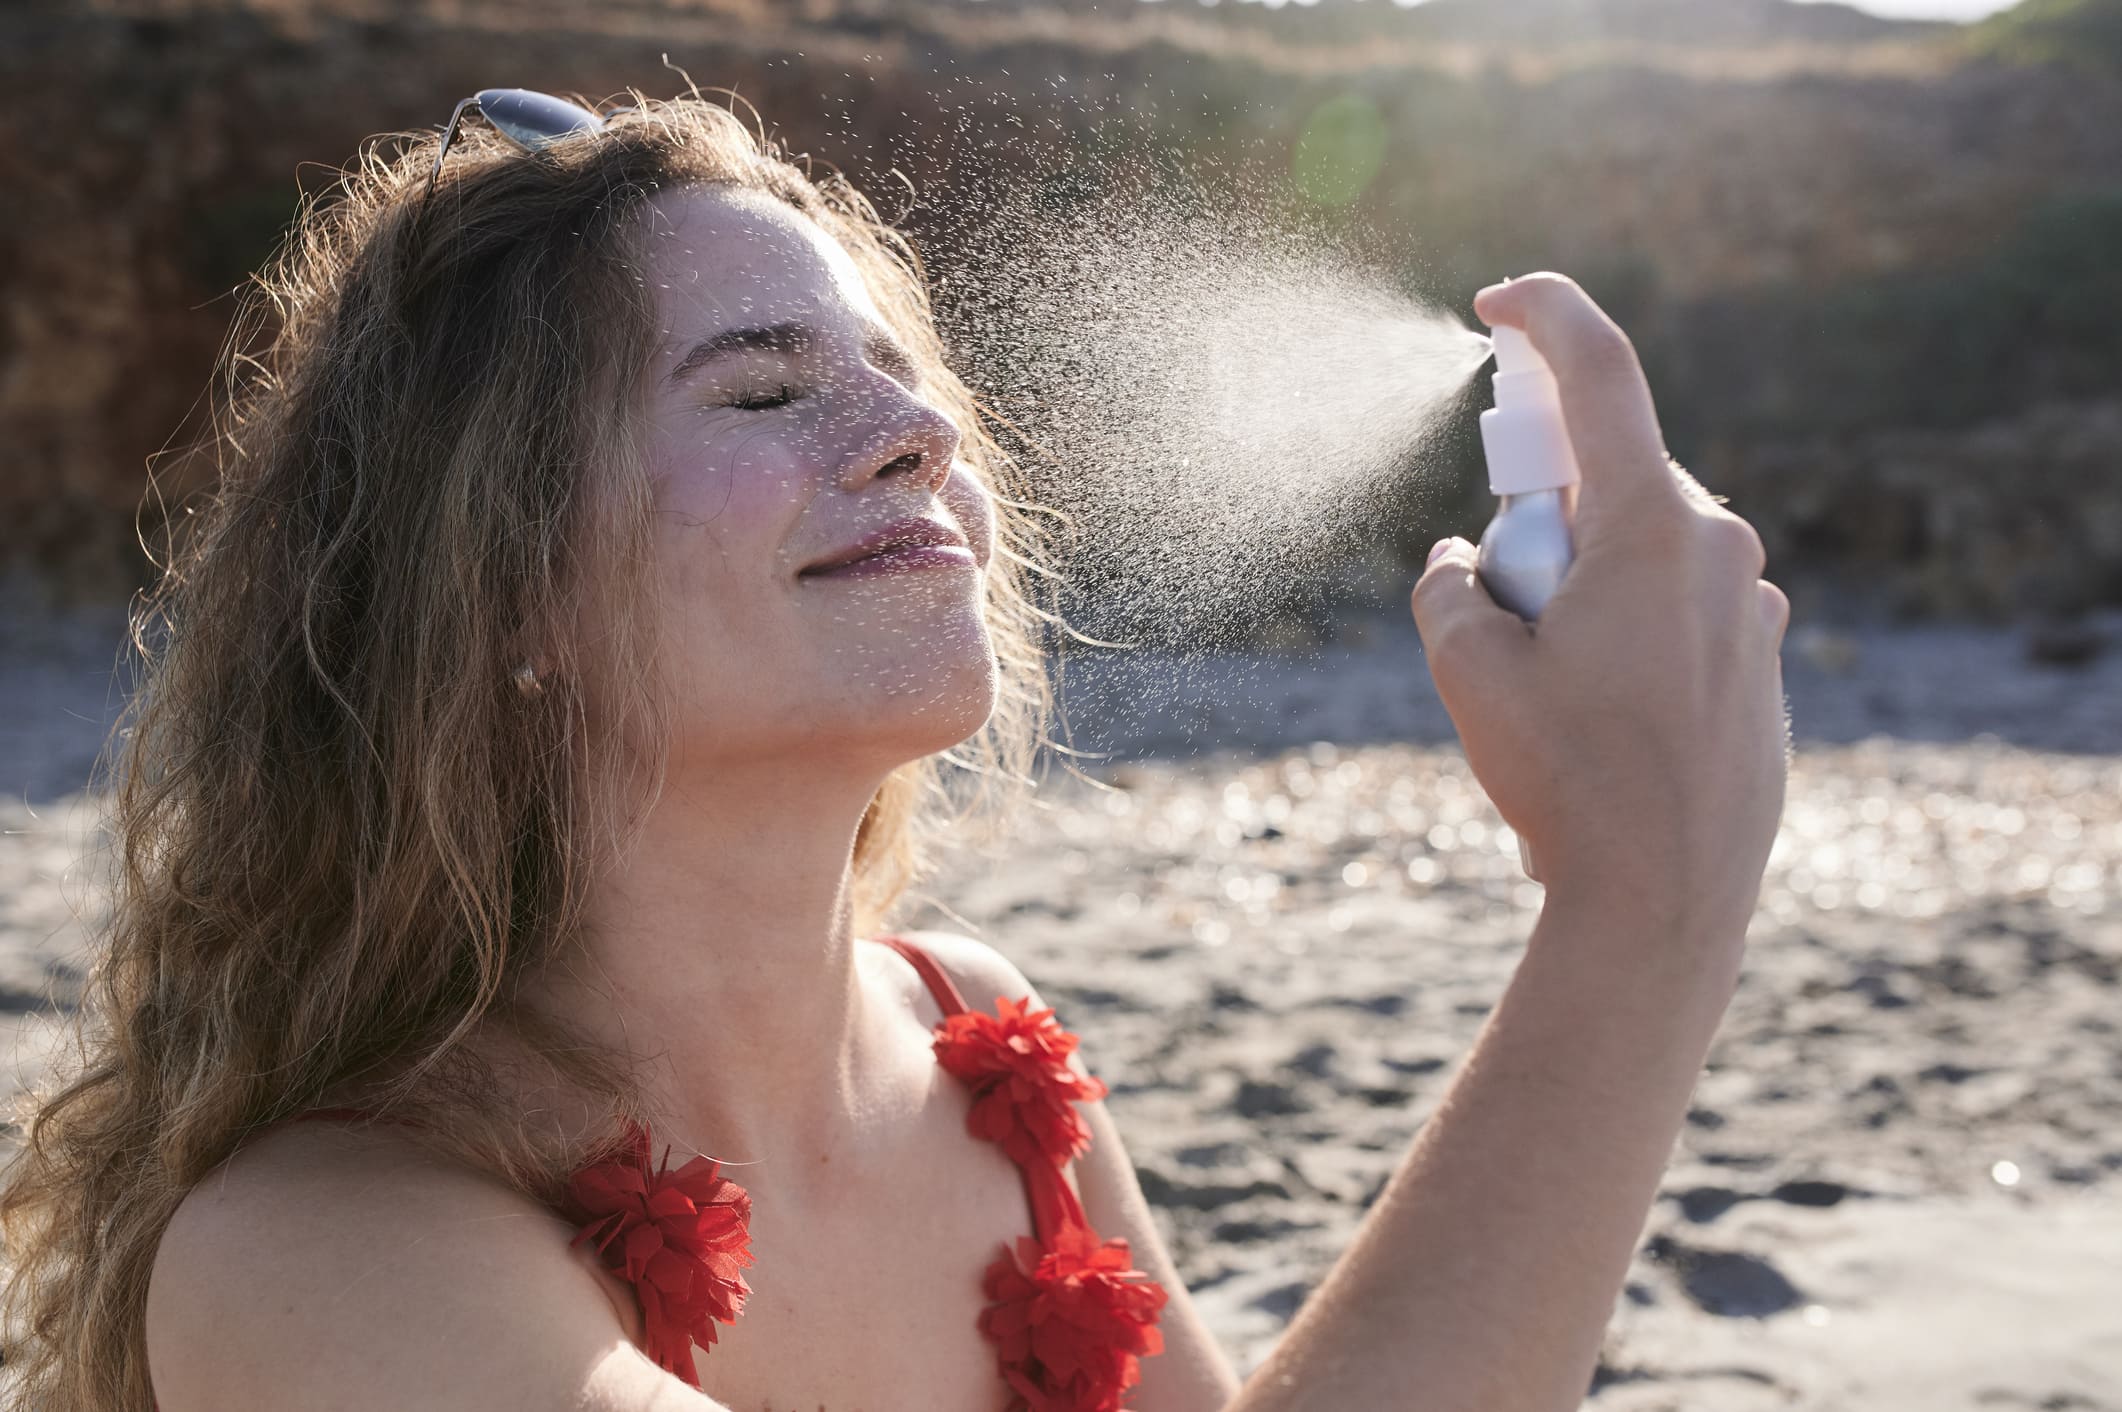 Una chica poniéndose cema solar en la playa.